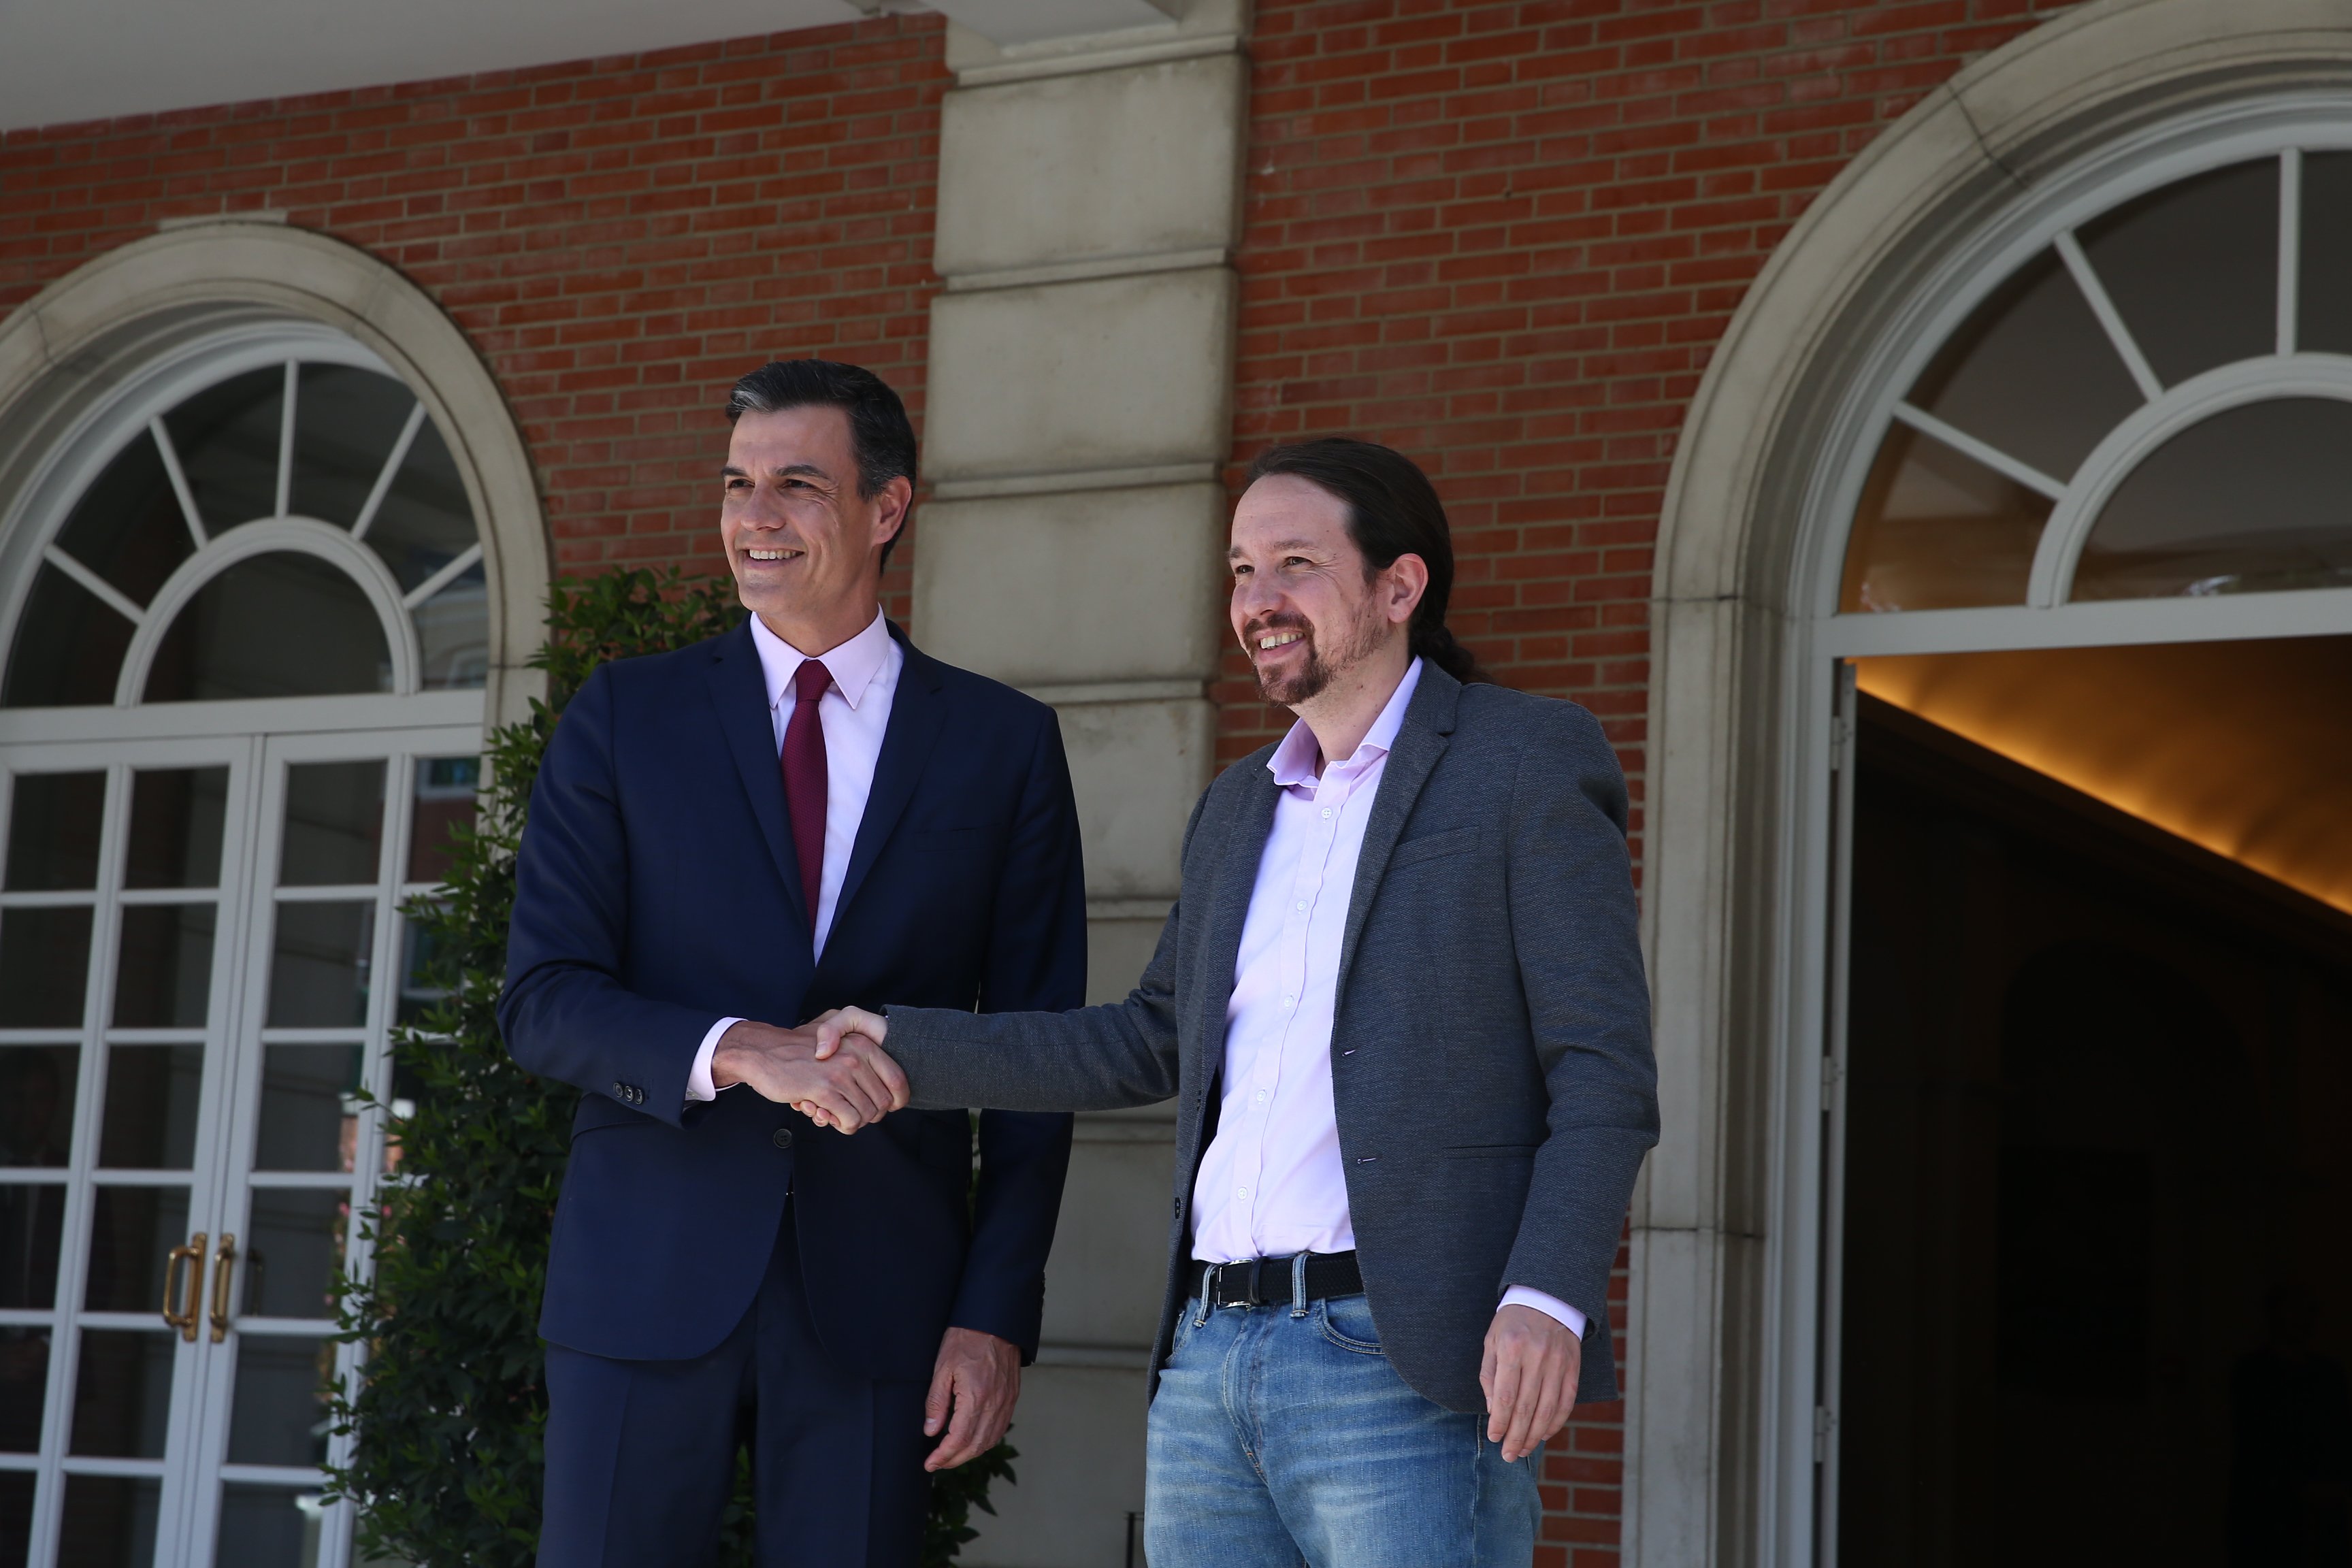 L'oferta de Sánchez a Iglesias: “responsabilitats" fora del Consell de Ministres